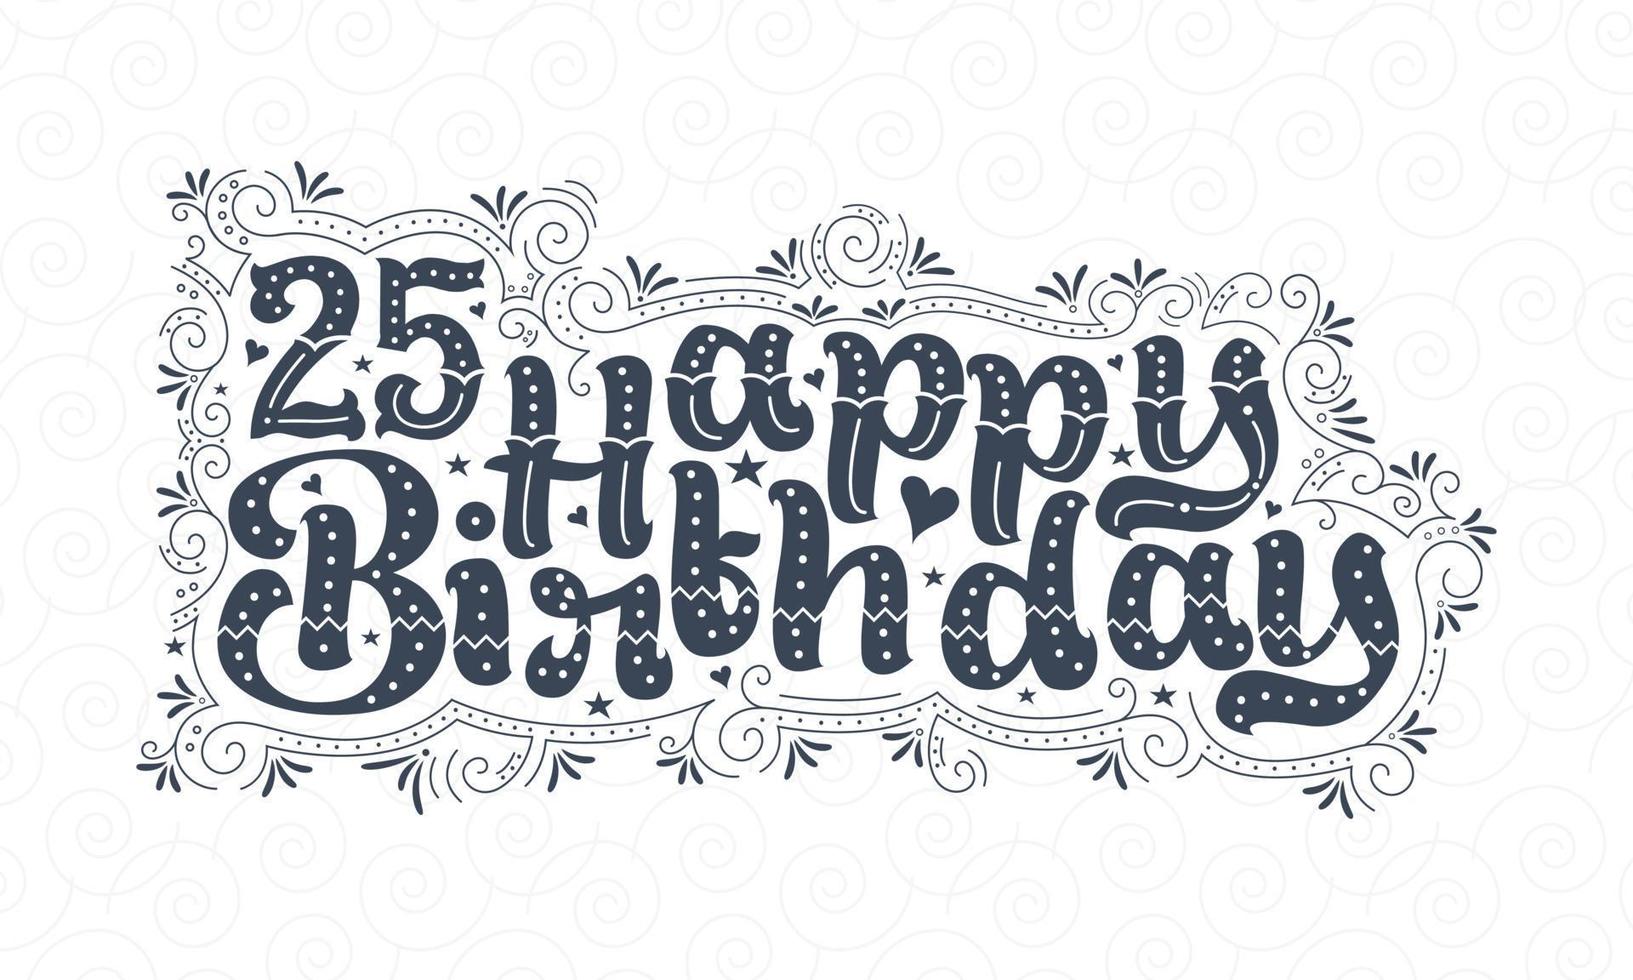 25e gelukkige verjaardag belettering, 25 jaar verjaardag mooi typografieontwerp met stippen, lijnen en bladeren. vector